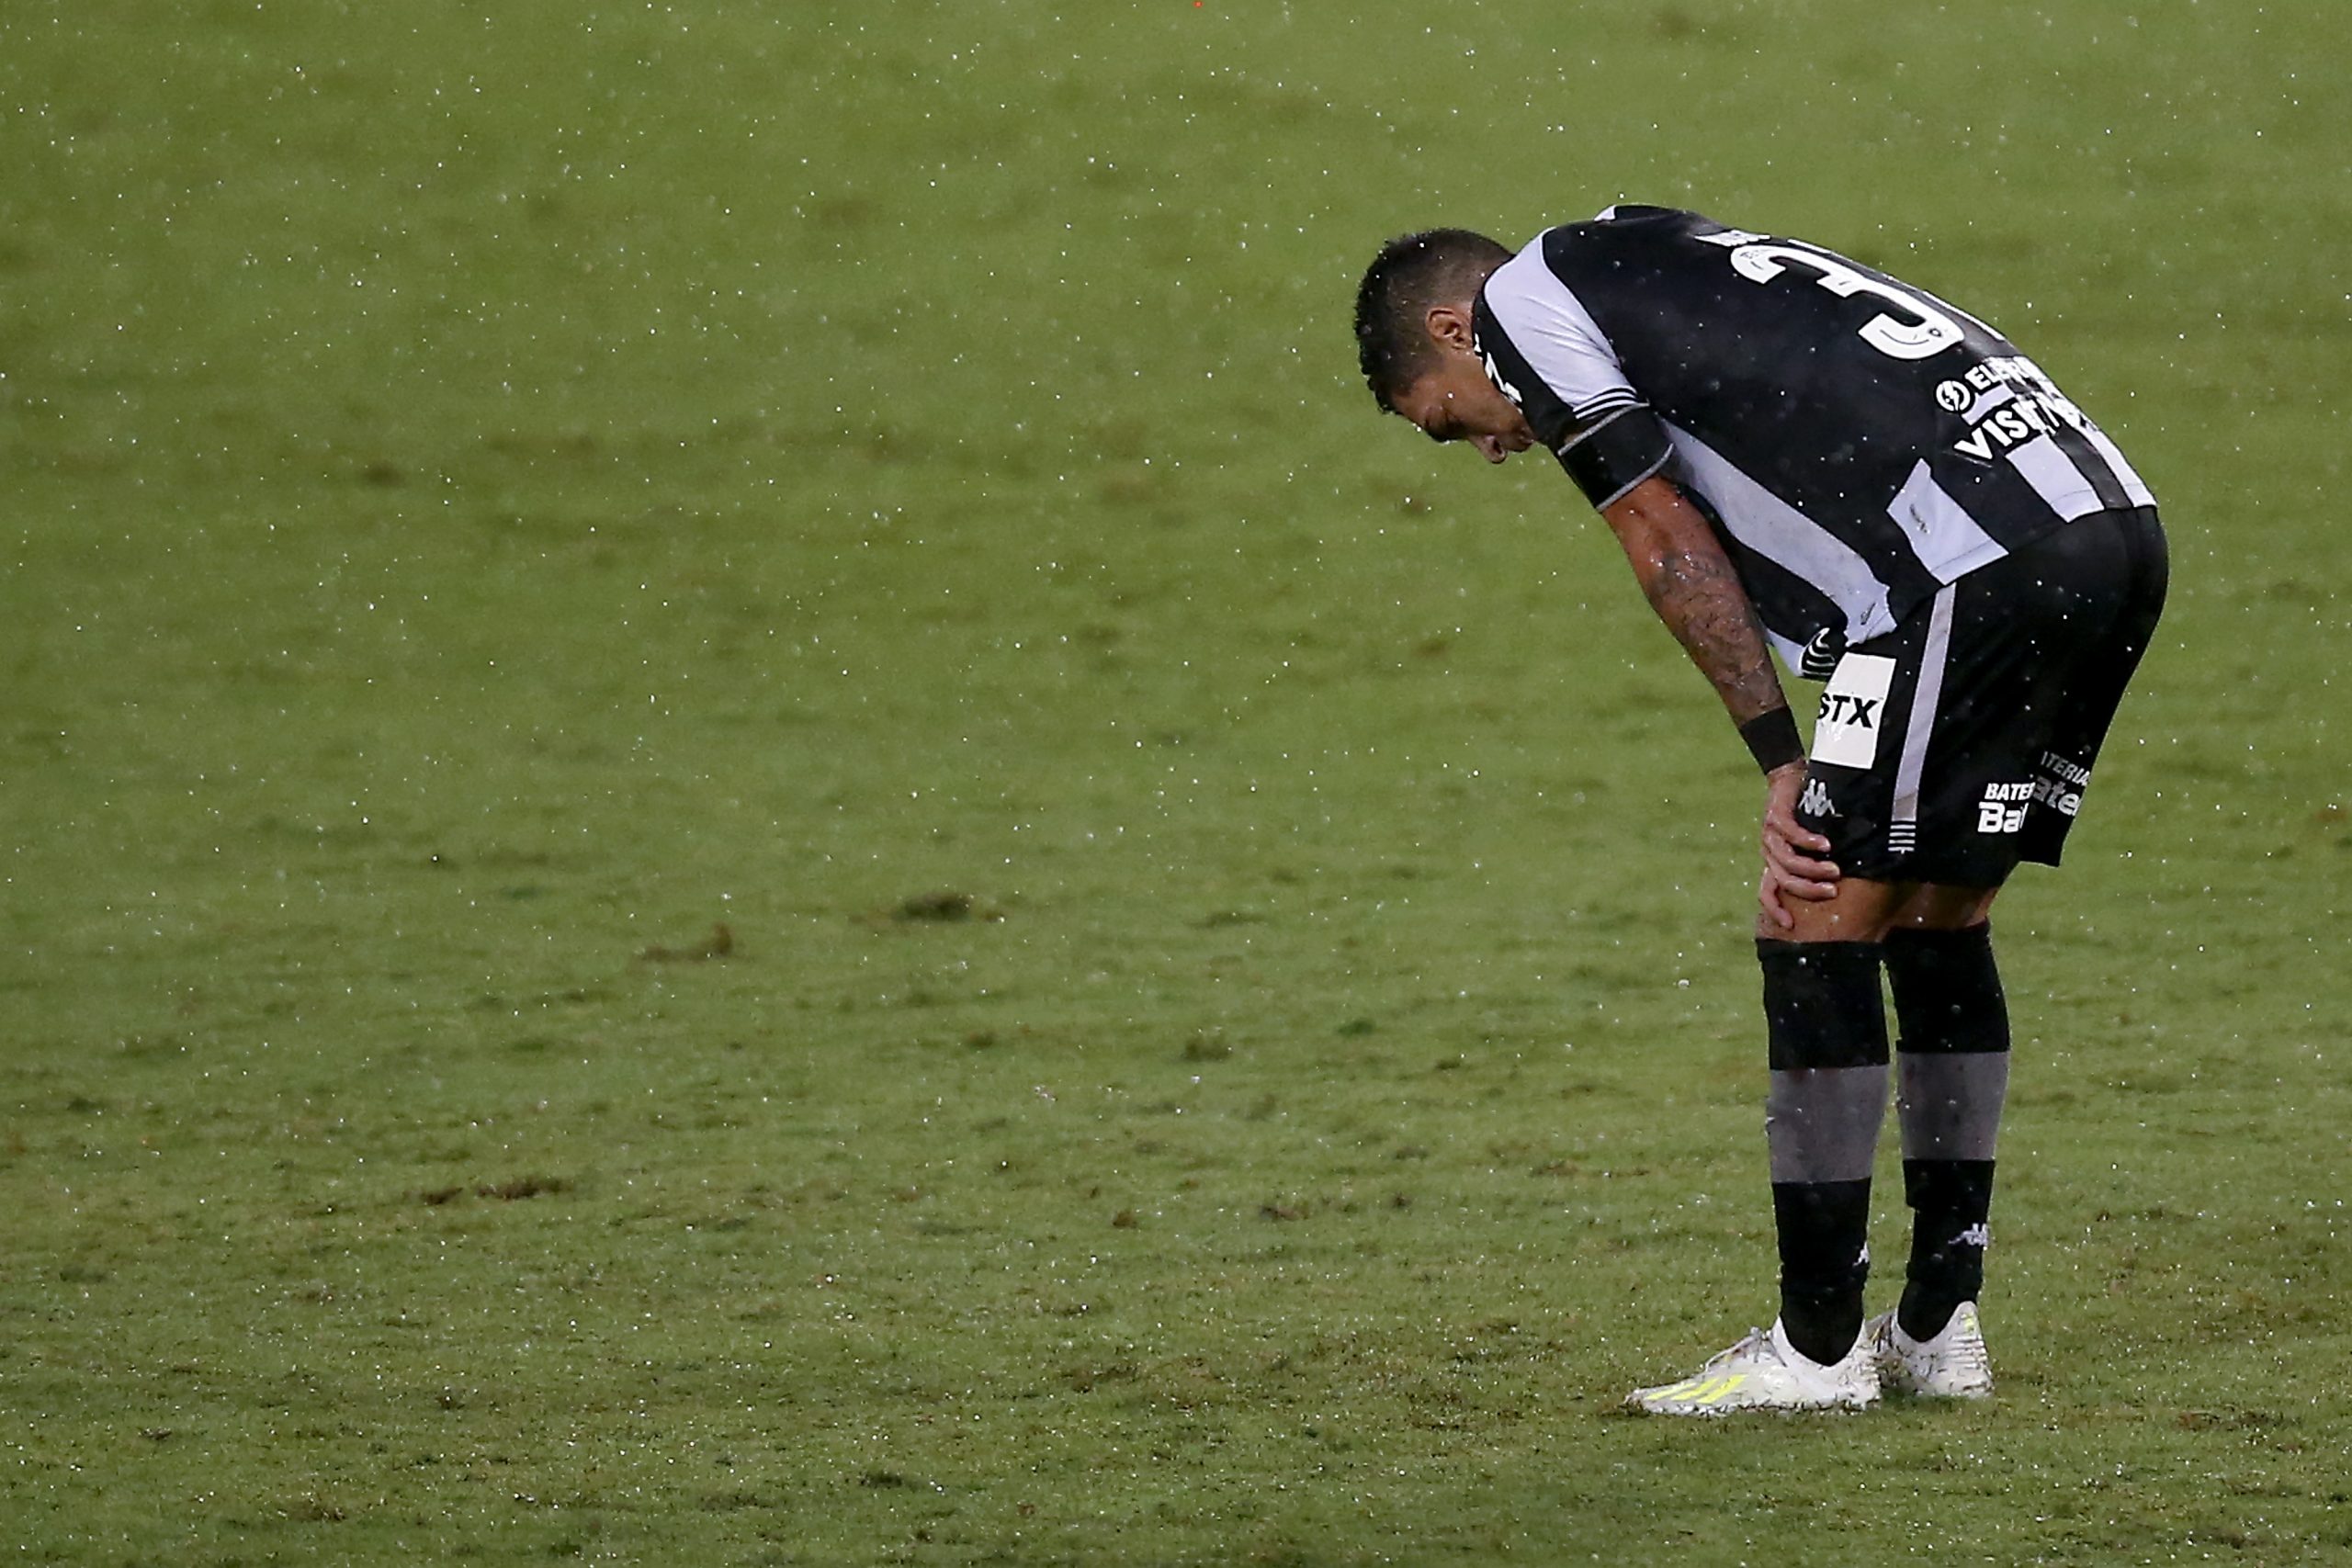 Botafogo Sport